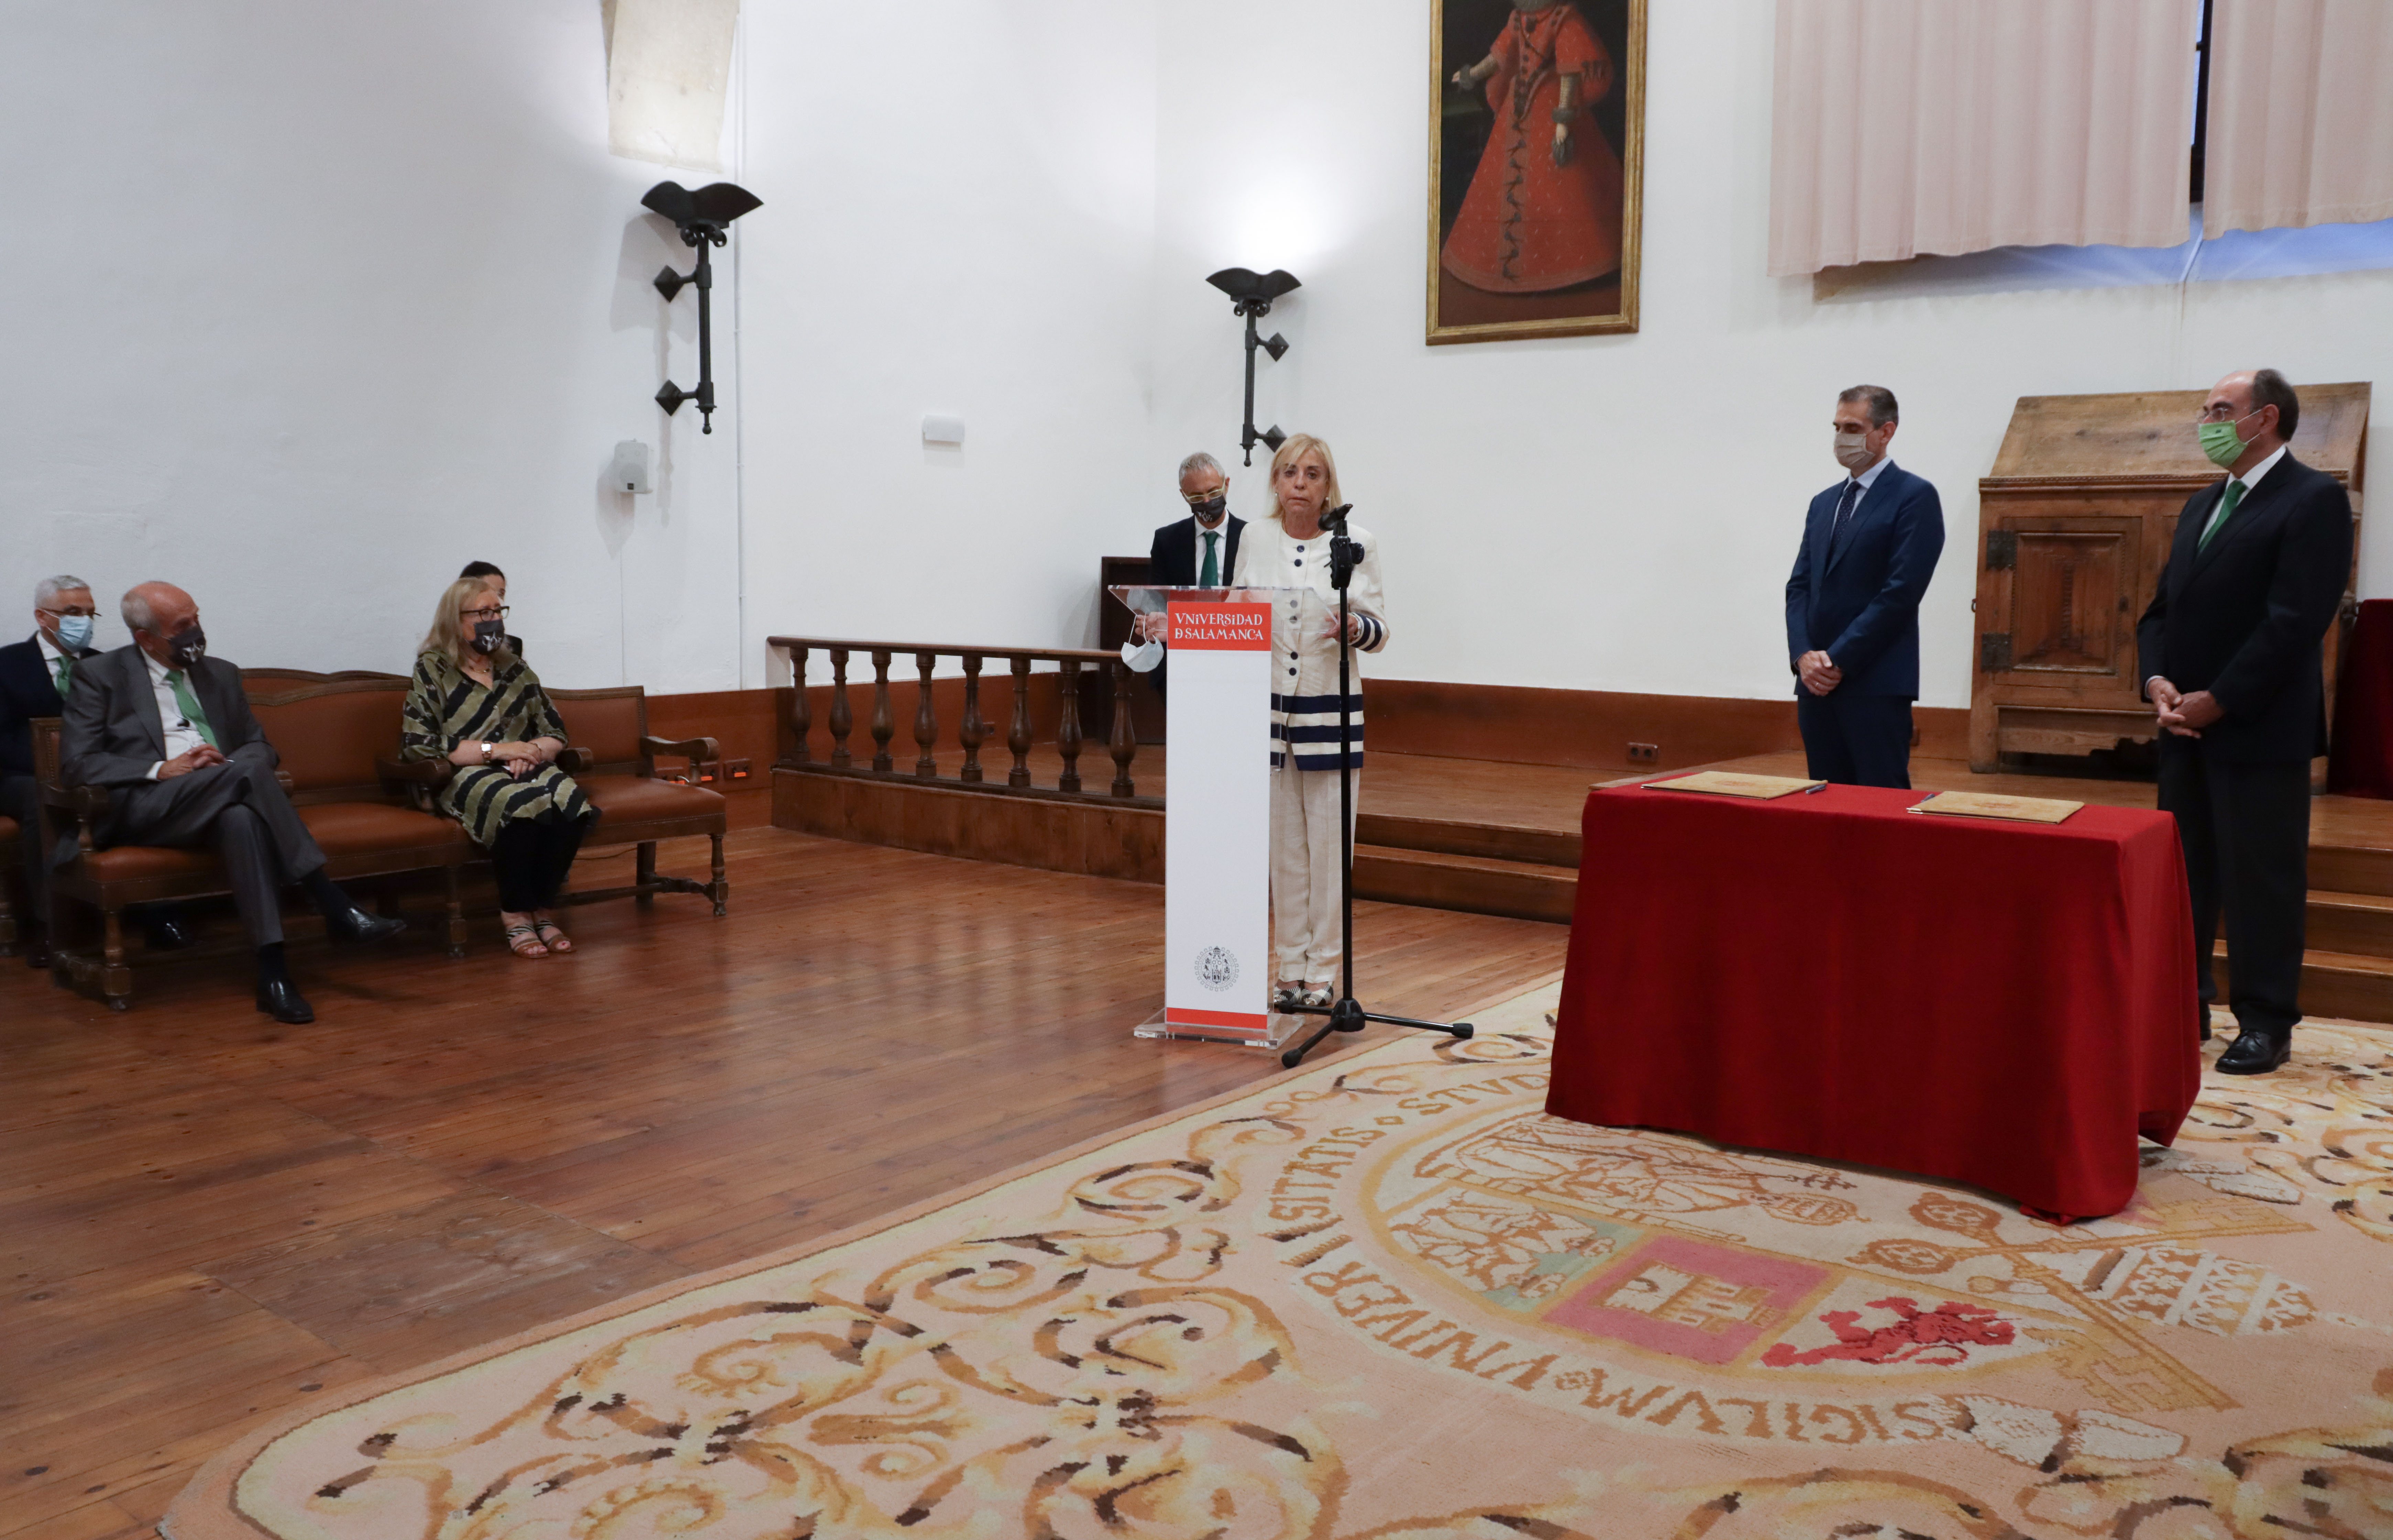  La Universidad de Salamanca custodiará documentación original concerniente a la negociación de la entrada de España en la CEE